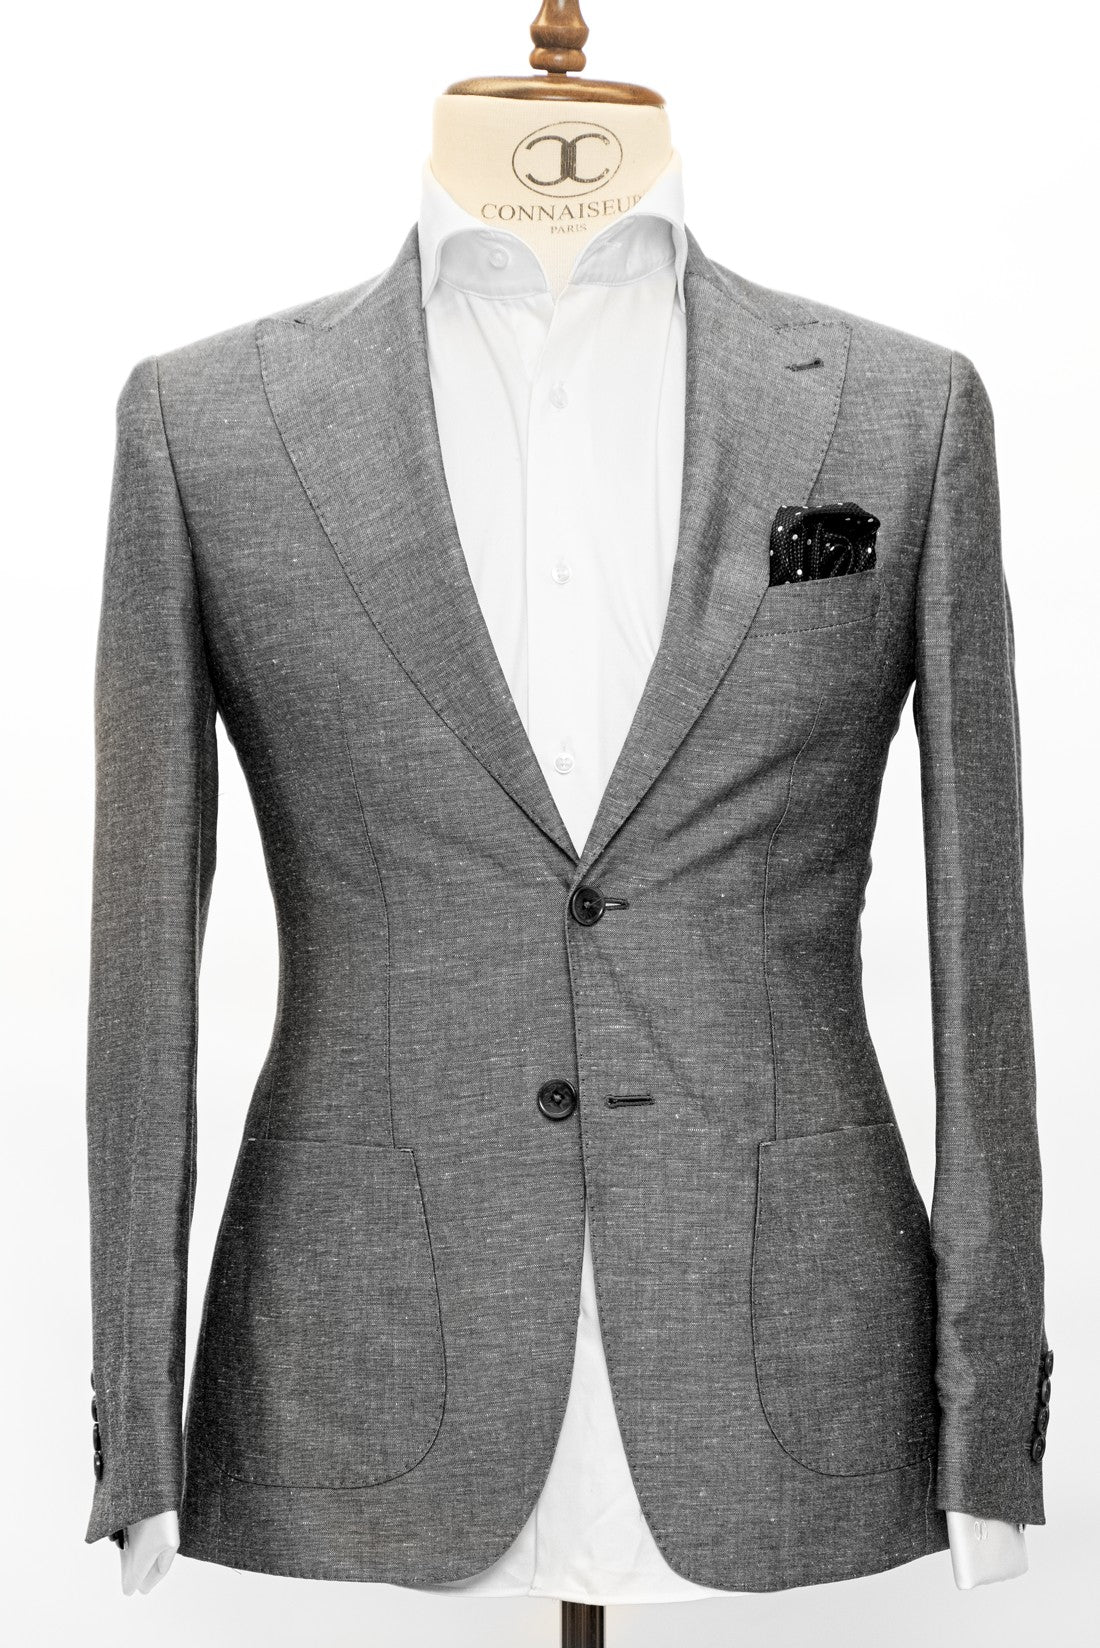 Connaisseur Paris - Grey 2 Piece Slim Fit Linen Suit with Patch Pockets